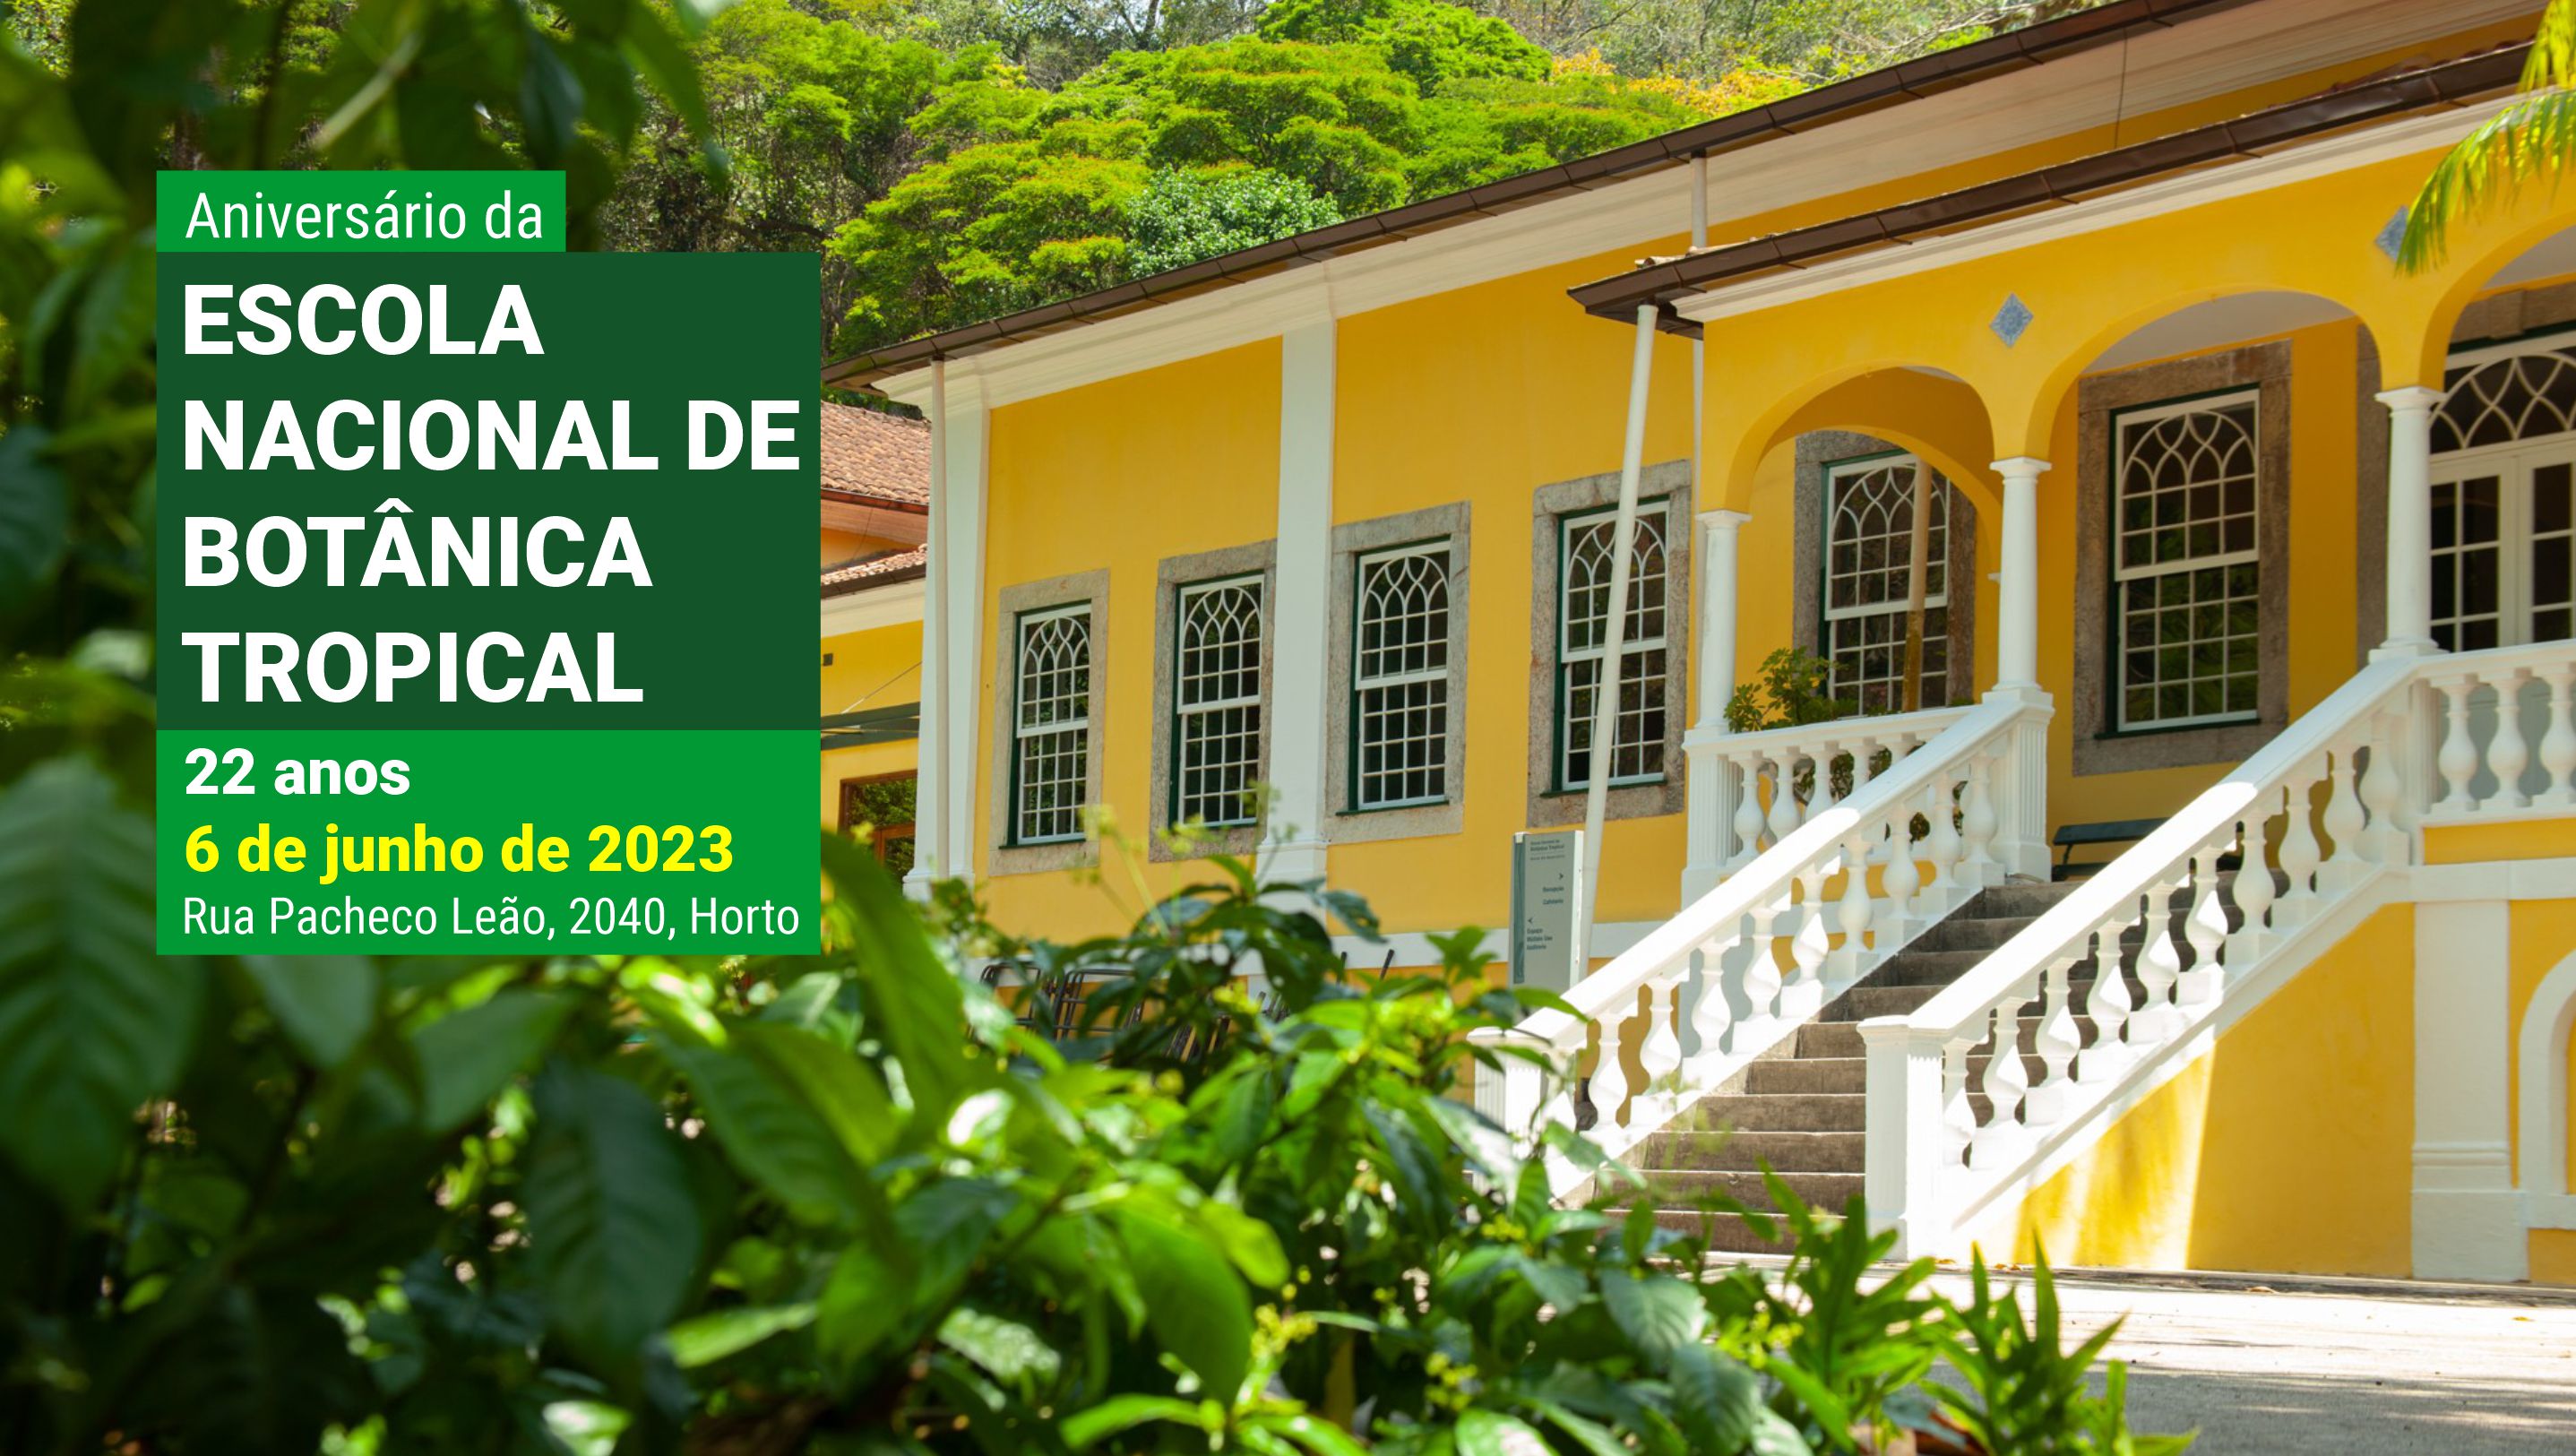 Escola Nacional de Botânica Tropical completa 22 anos e promove programação especial gratuita com visita guiada ao Solar da Imperatriz